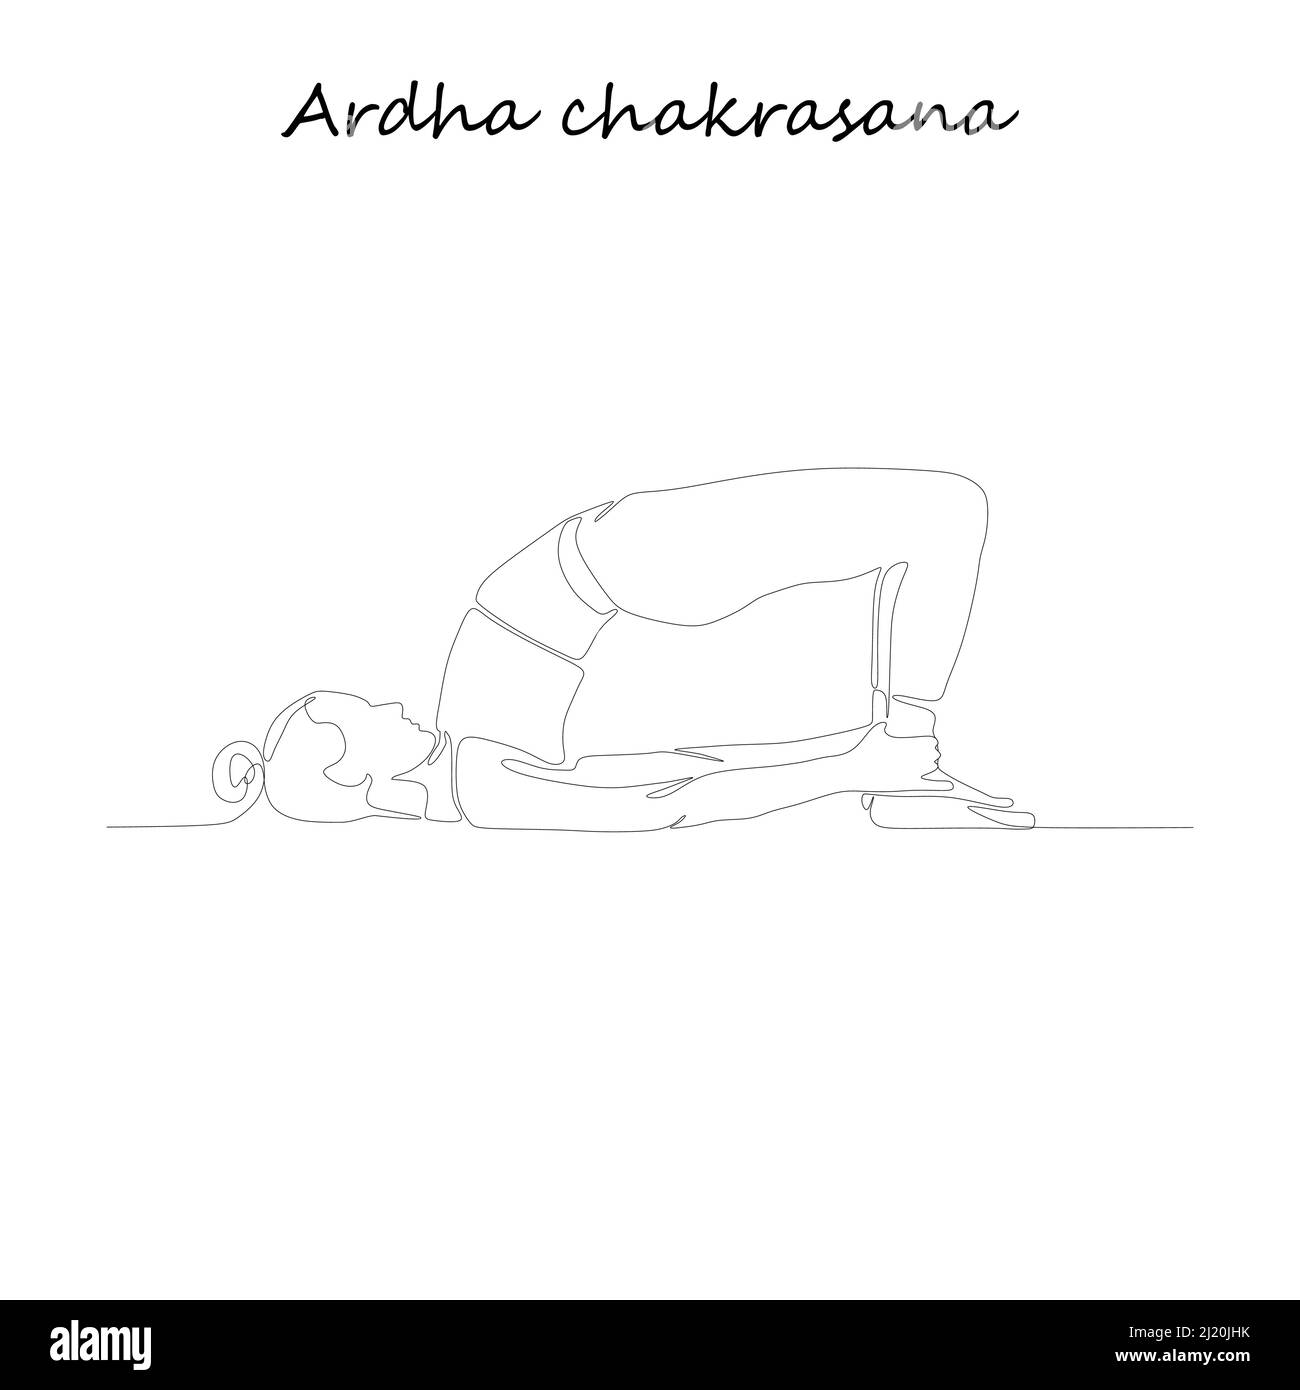 Fortlaufende Linienzeichnung. Junge Frau macht Yoga-Übung, Silhouette Bild. Eine Linie gezeichnete schwarz-weiße Illustration. Ardha chakrasana Stock Vektor